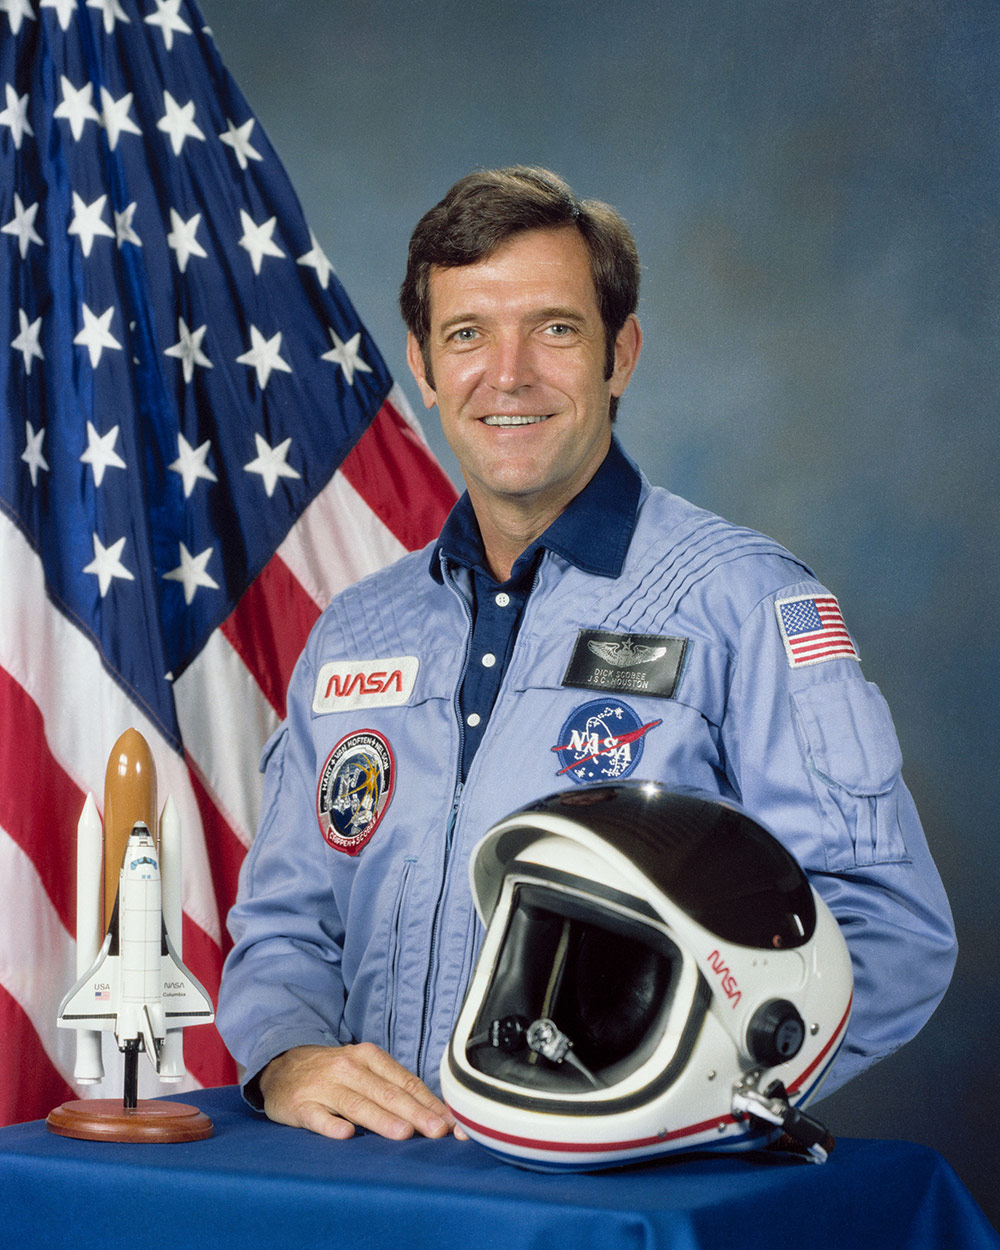 headshot of Astronaut Dick Scobee